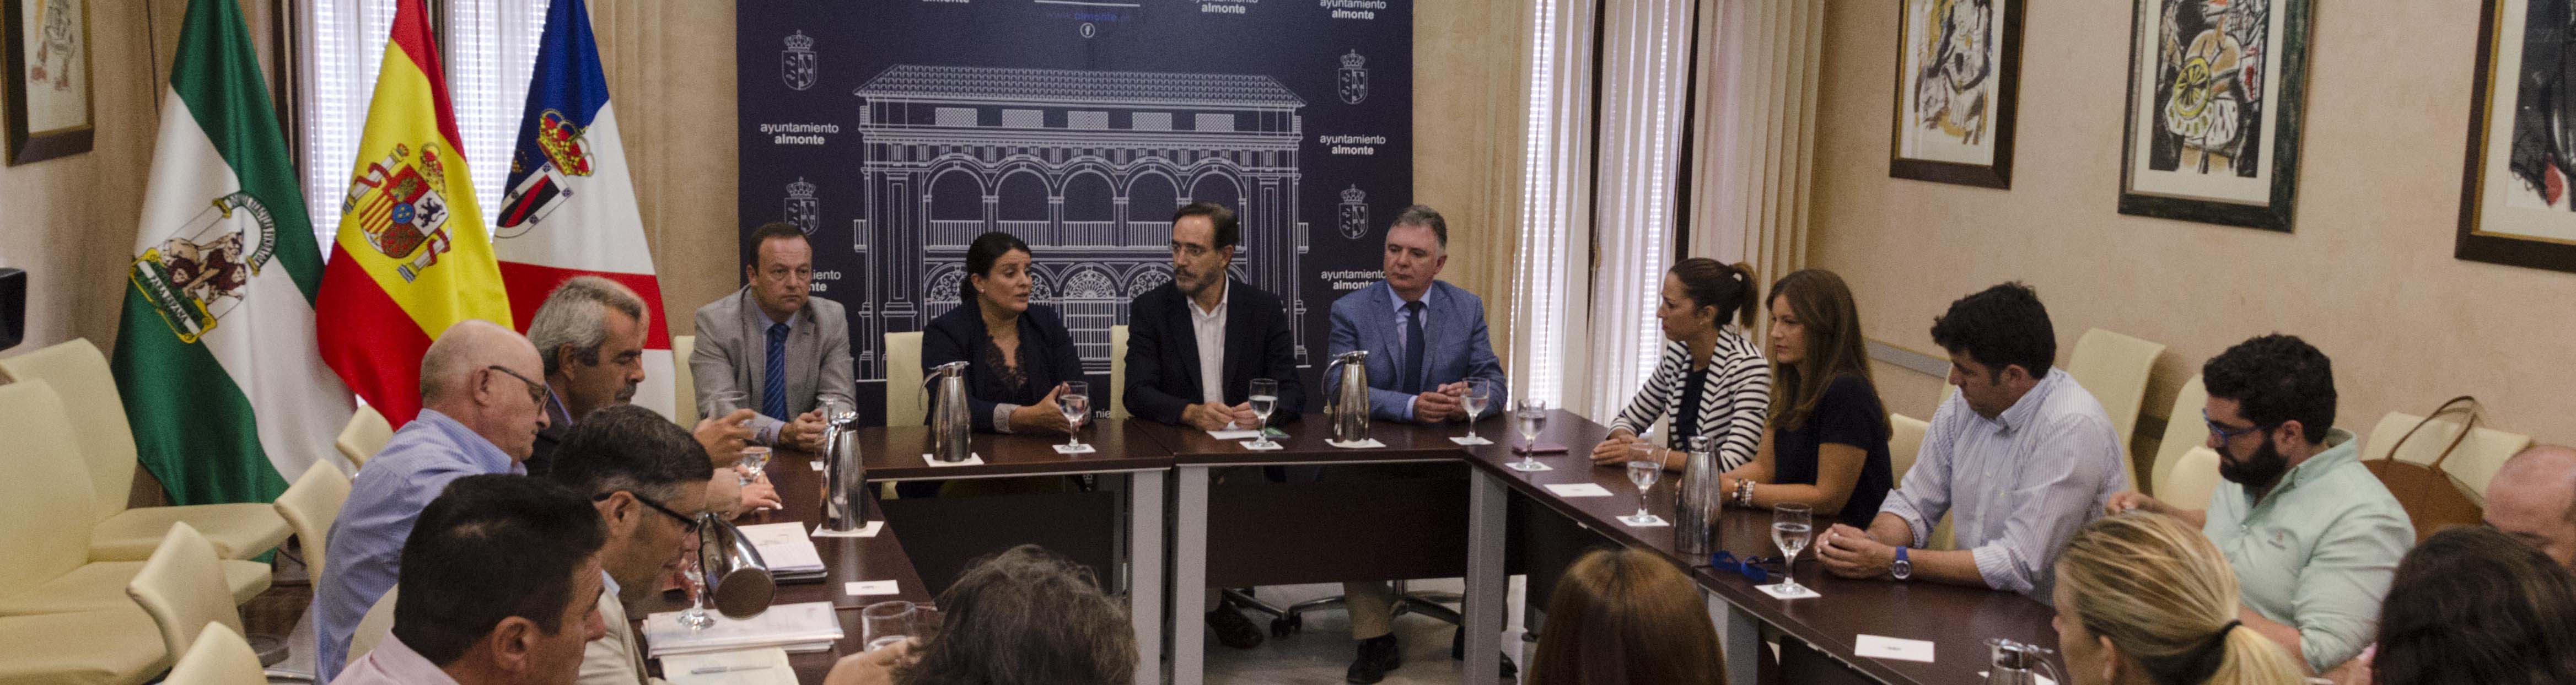 El consejero de Fomento, Felipe López, presenta el proyecto al equipo de gobierno almonteño y los colectivos sociales.